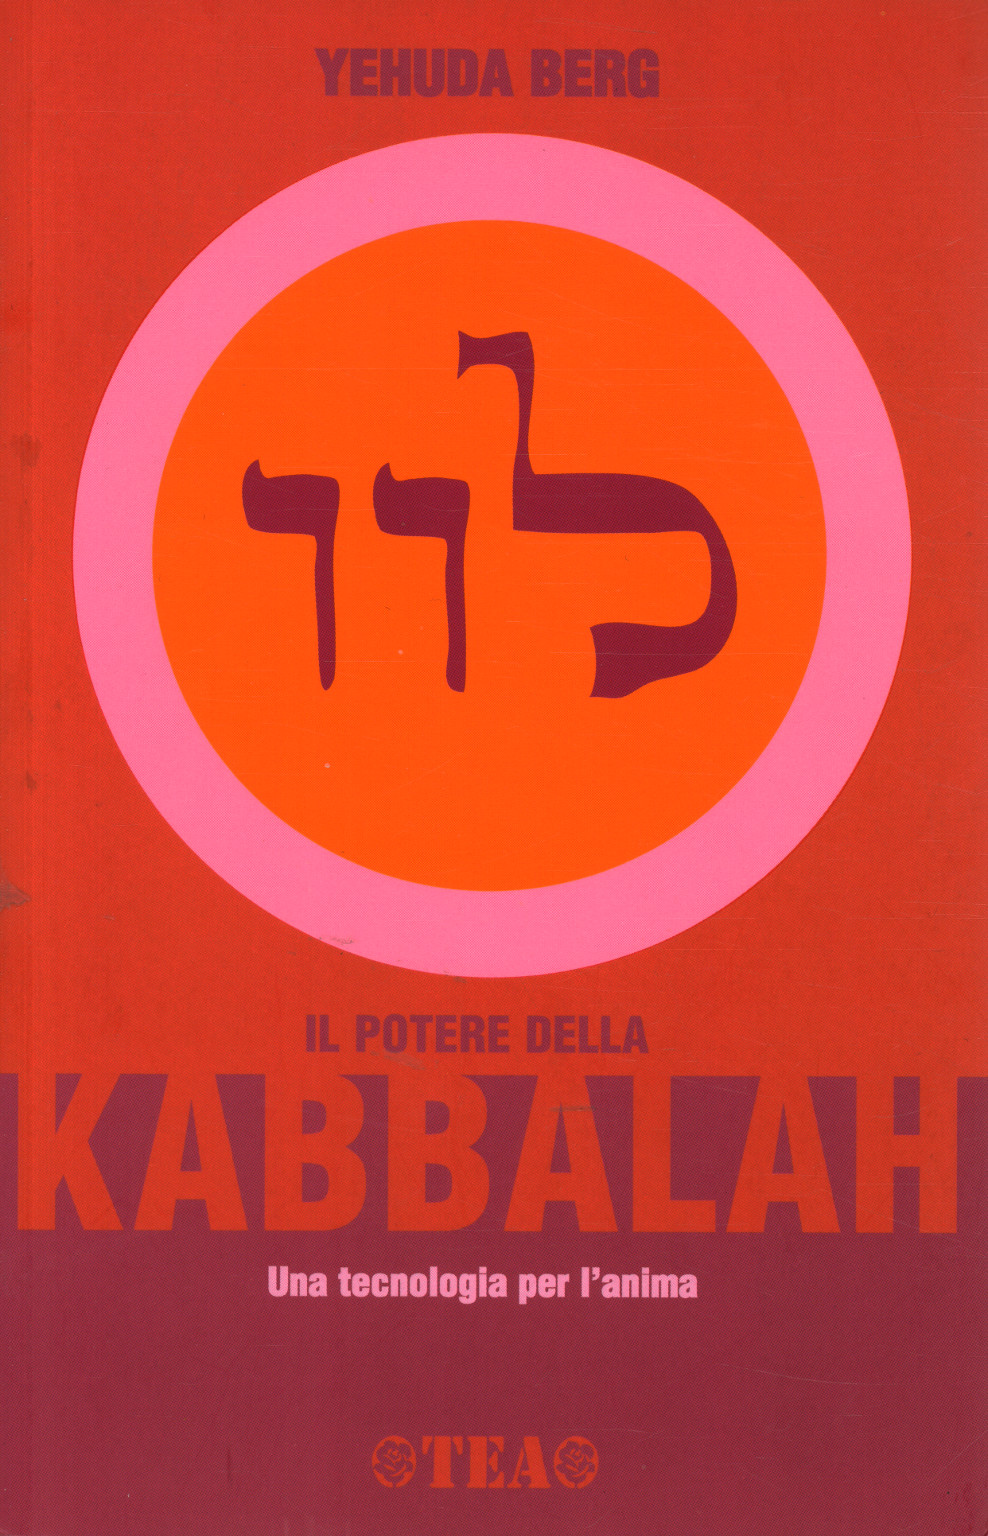 The power of Kabbalah